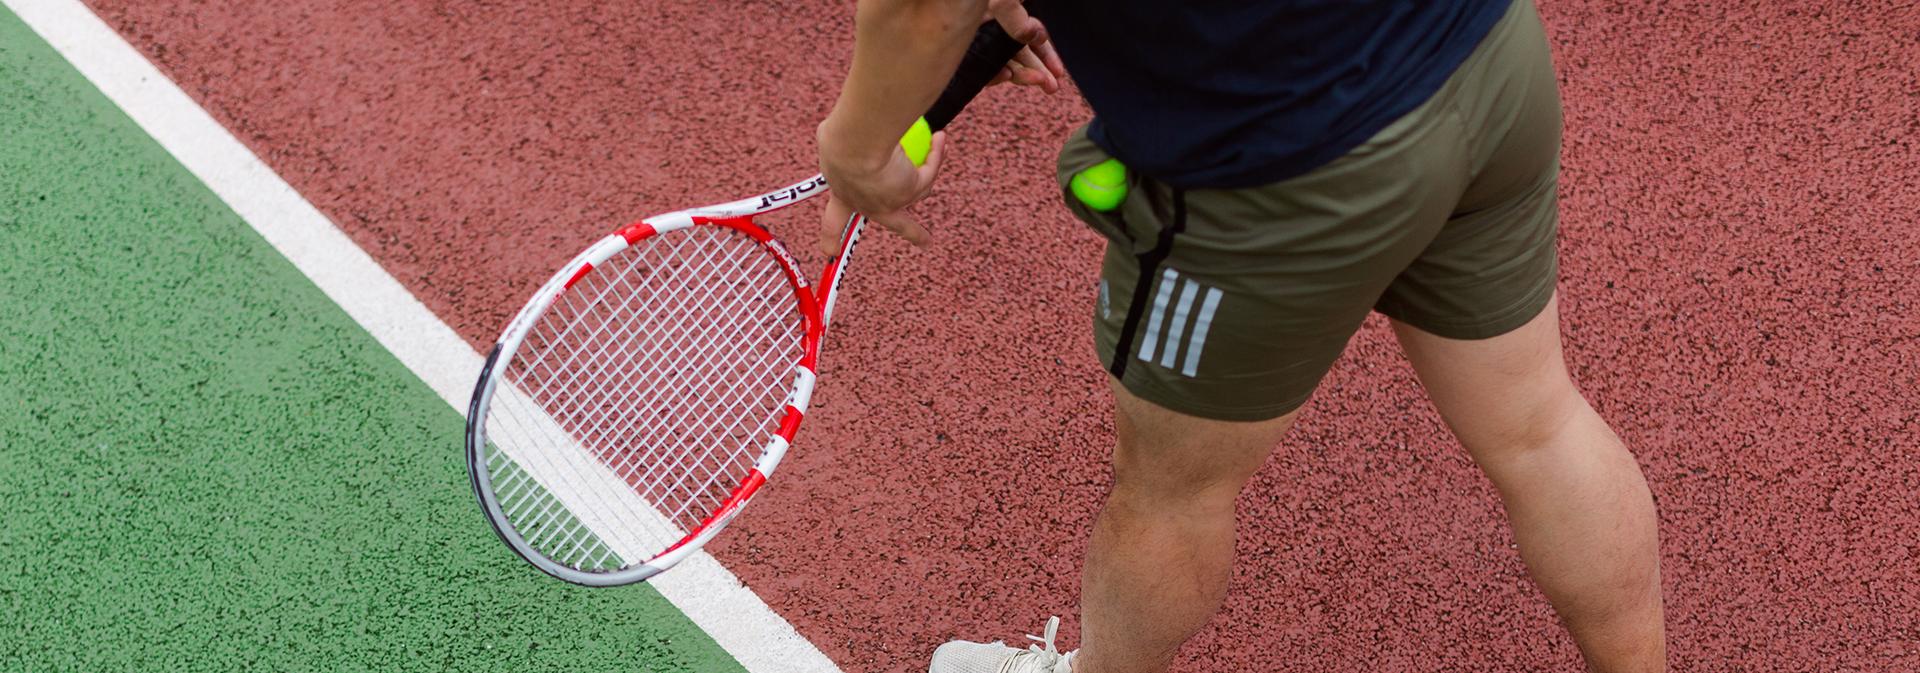 En person håller i tt tennisracket